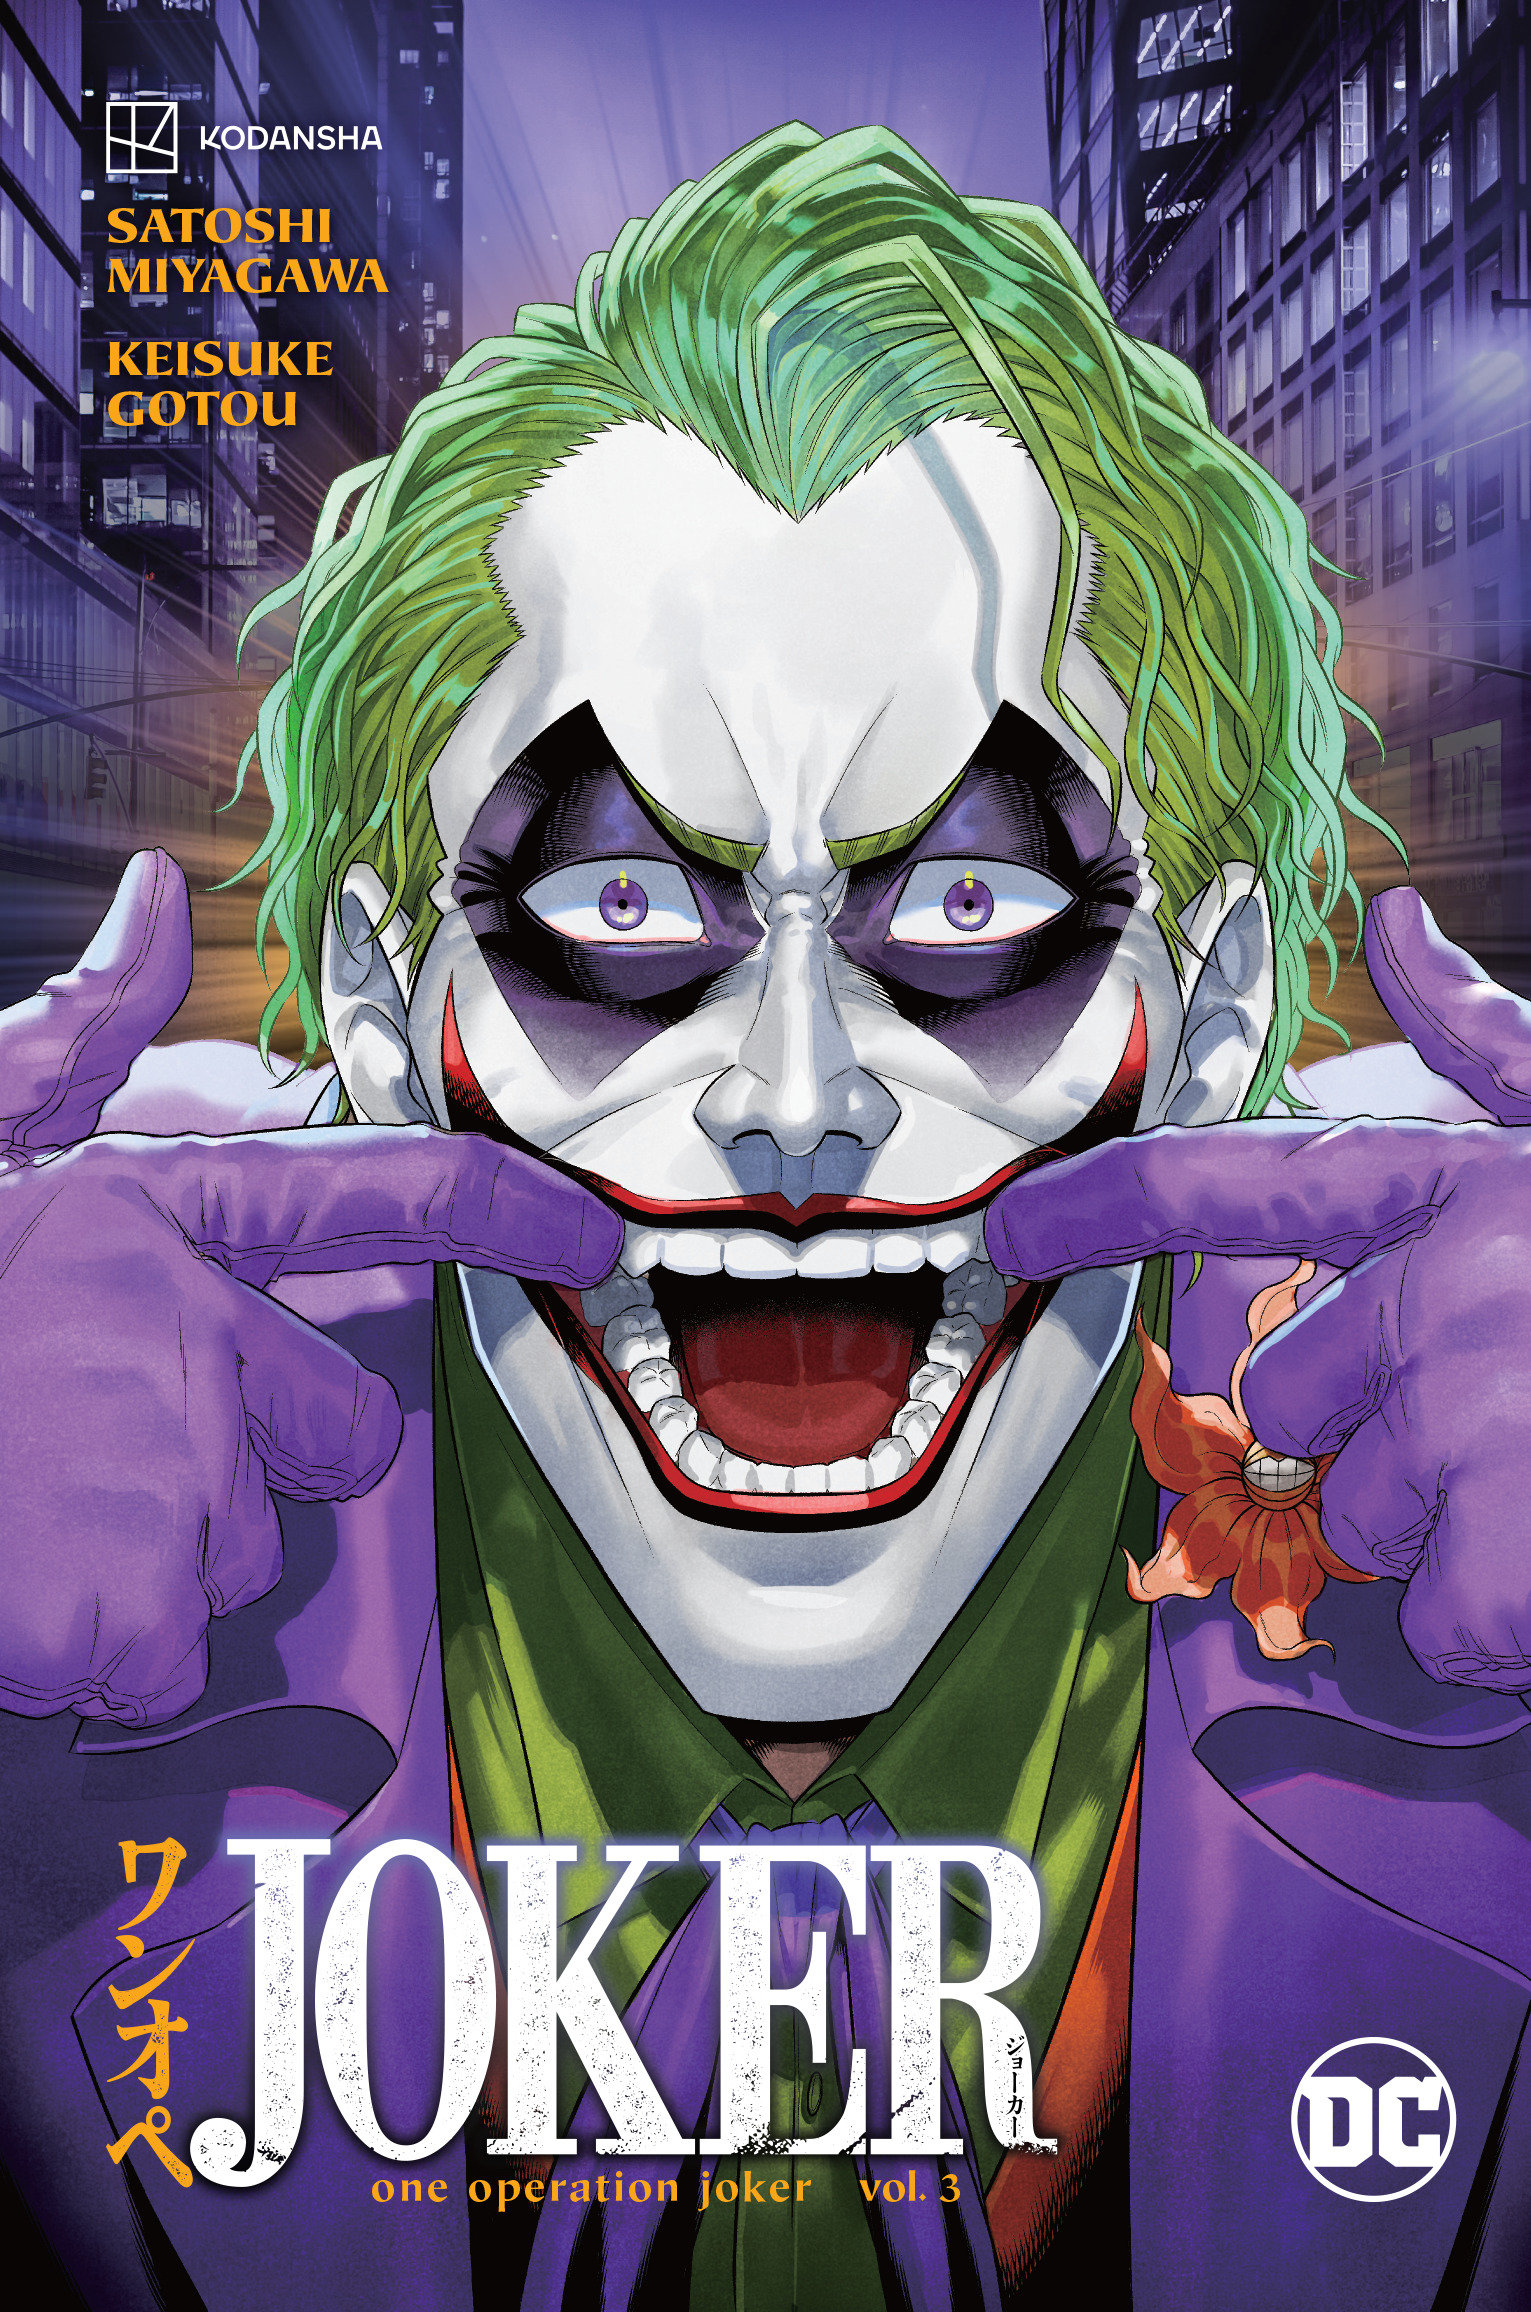 Joker One Operation Joker Manga Volume 3